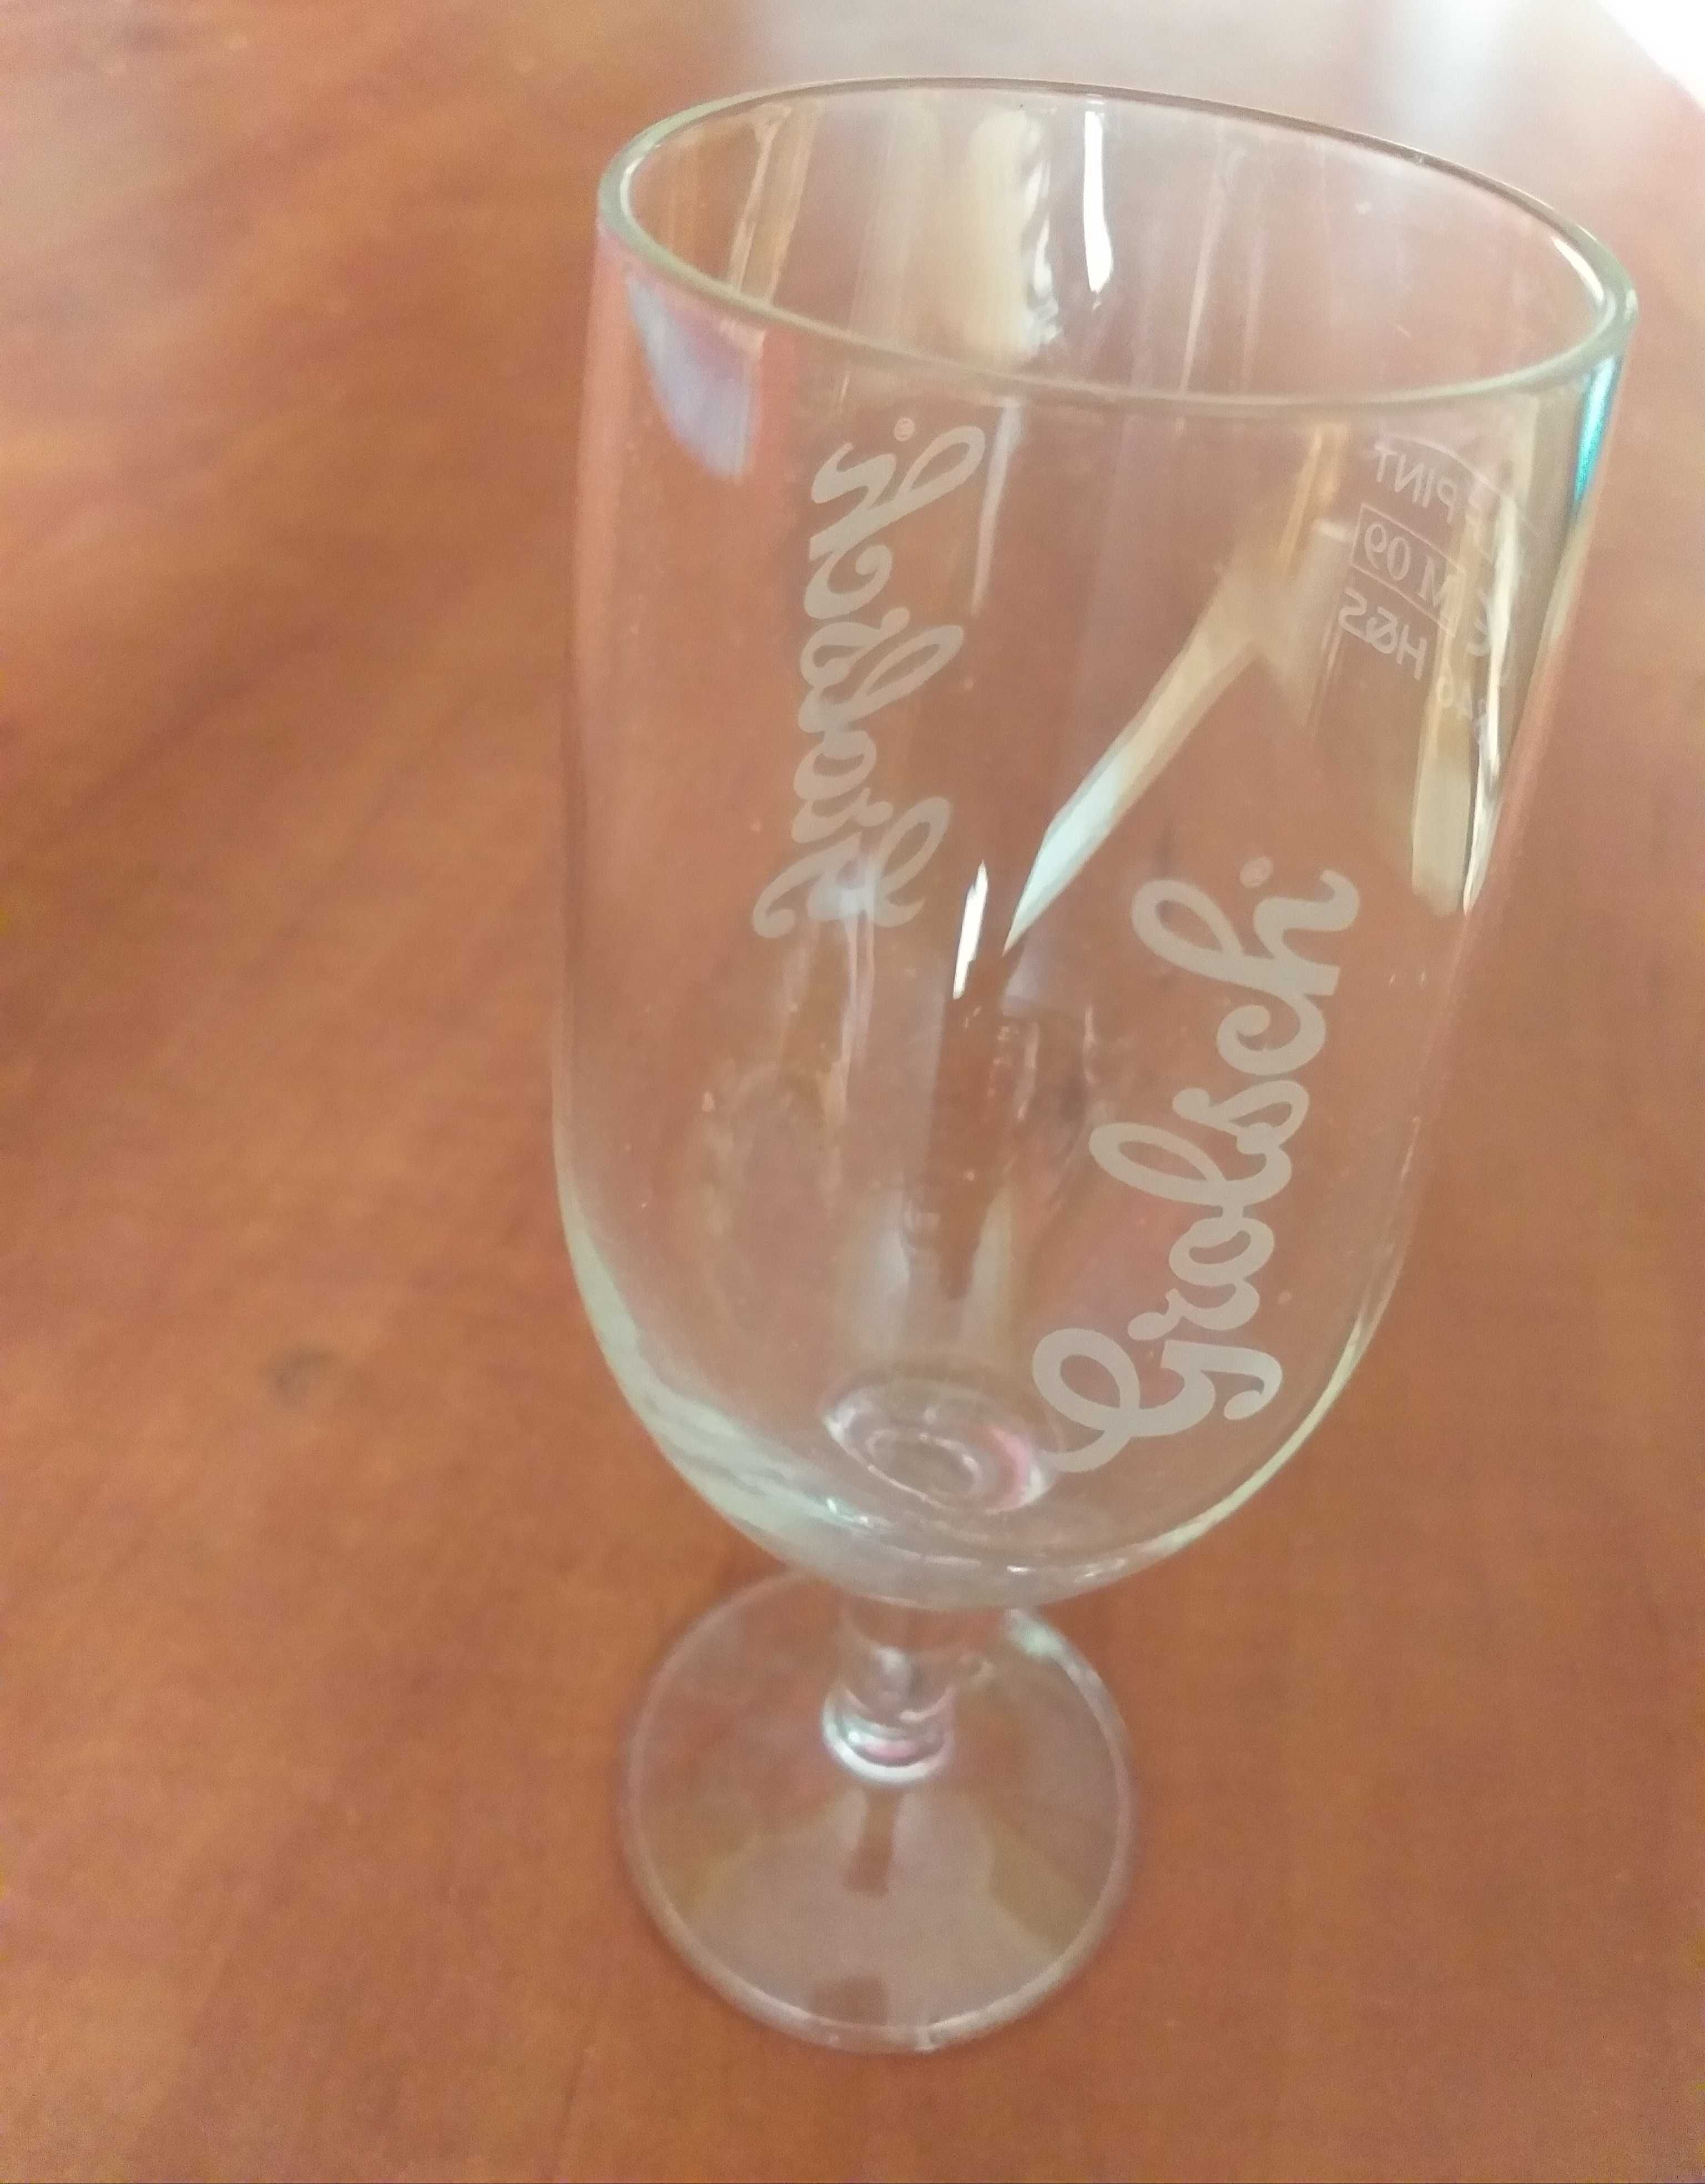 Grolsch голландский пивной стакан бокал на ножке пол пинты 0.34л